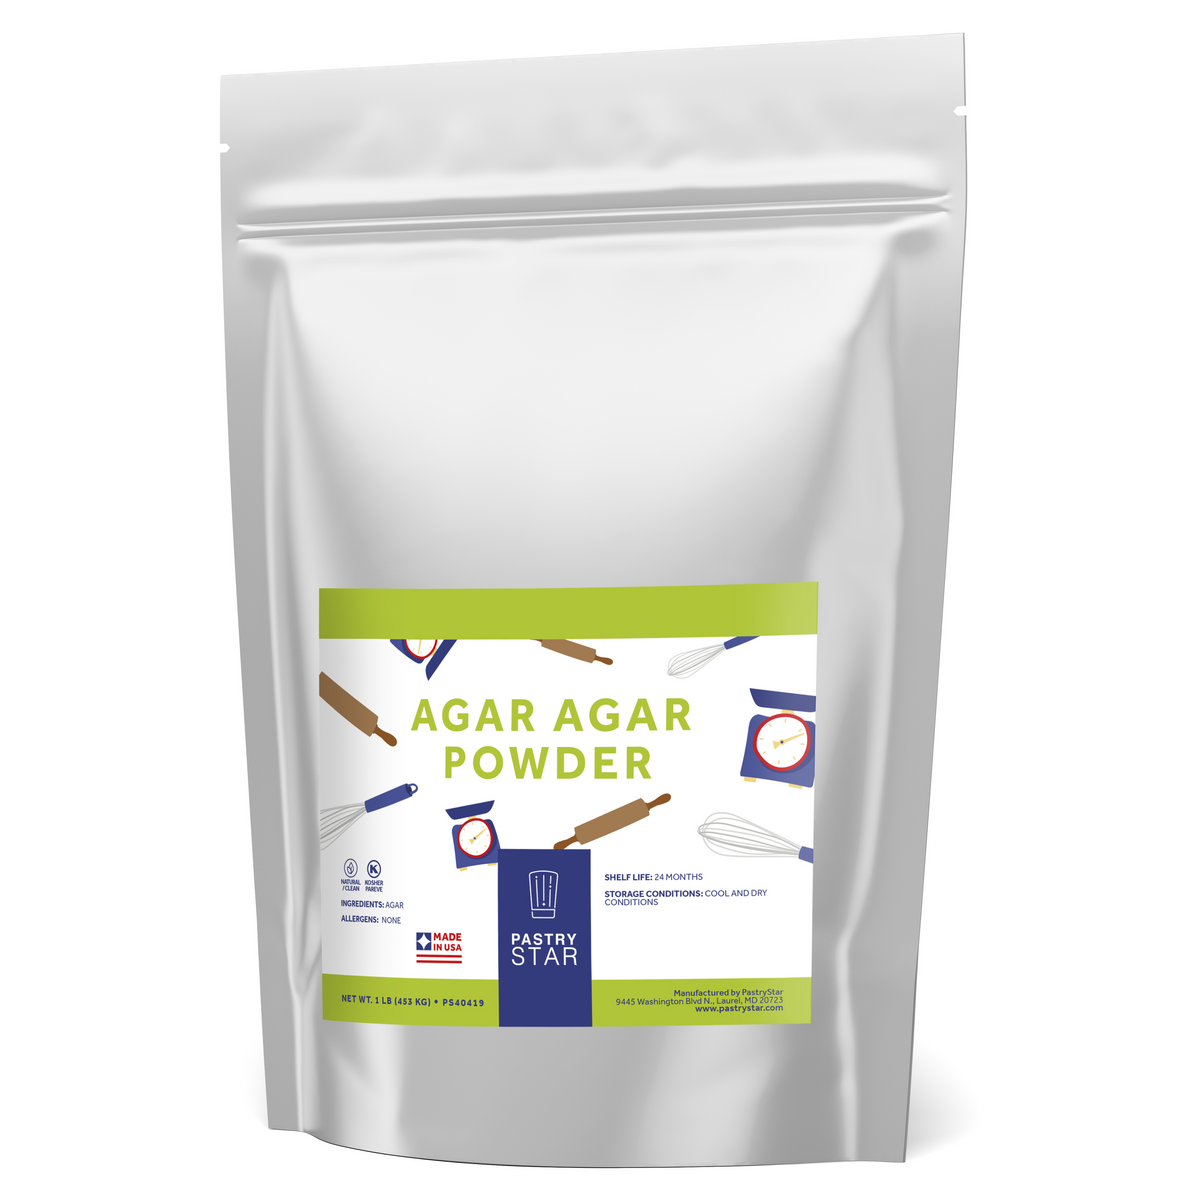 Agar Agar Powder, Vegan, Gelling, Thickening - 5-lb